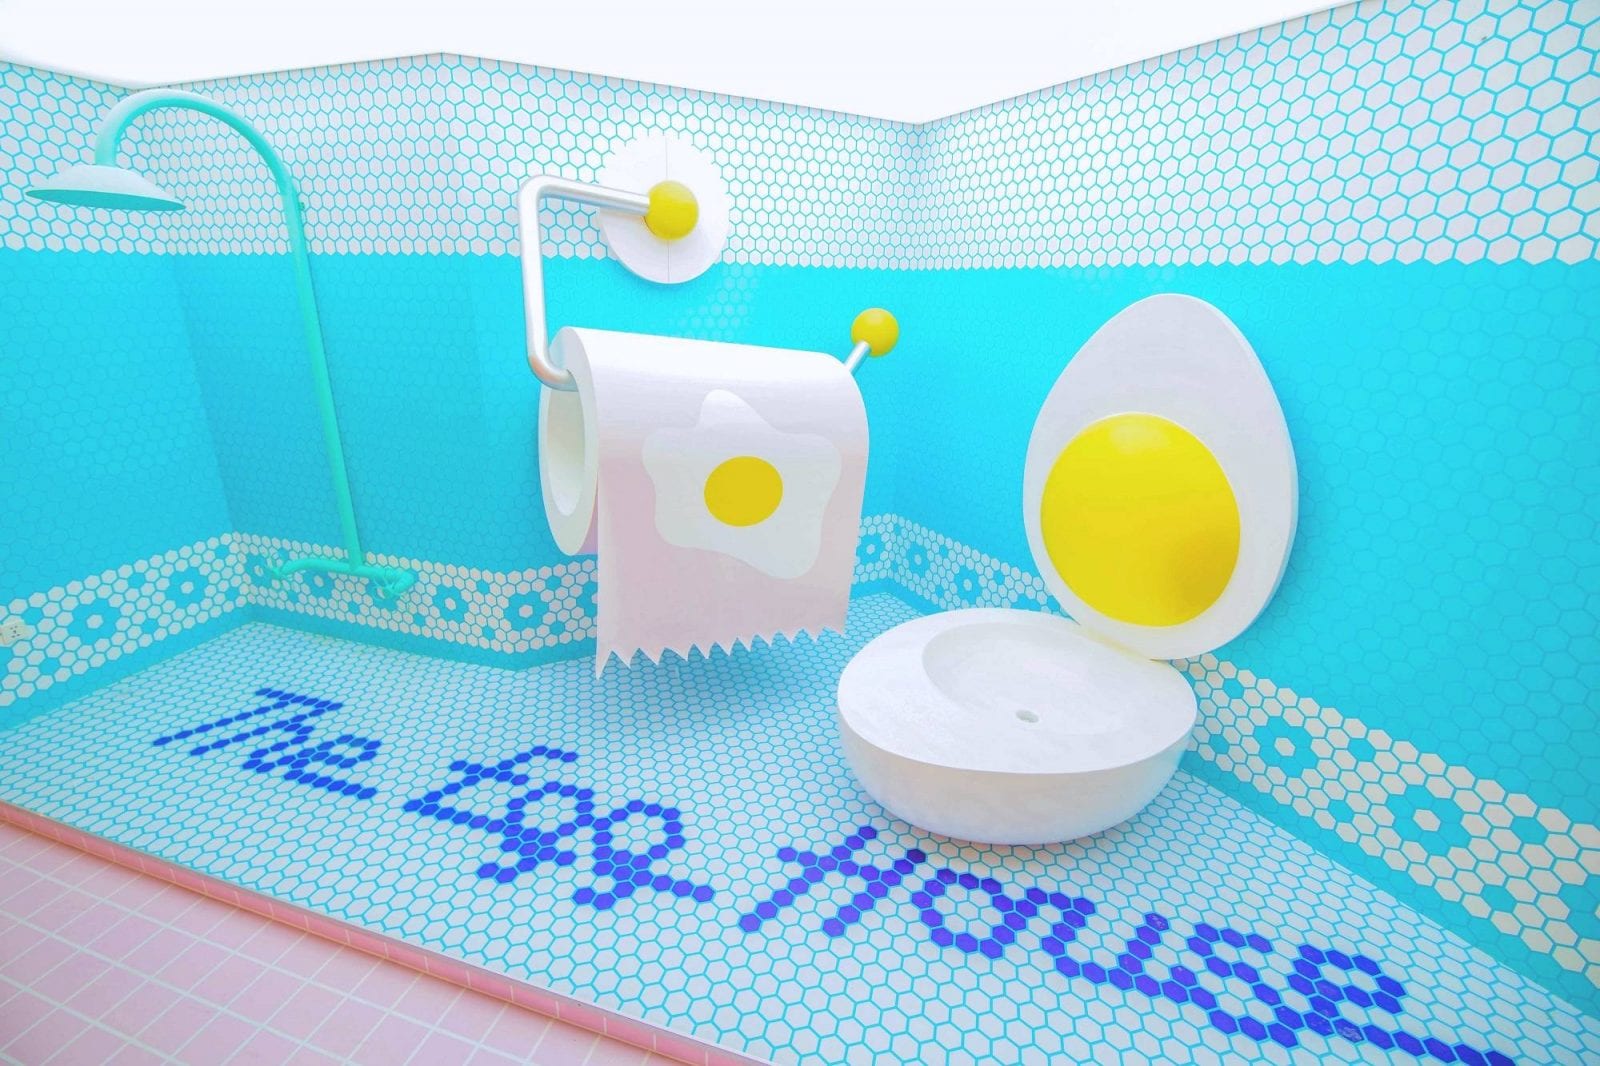 The Egg House 1